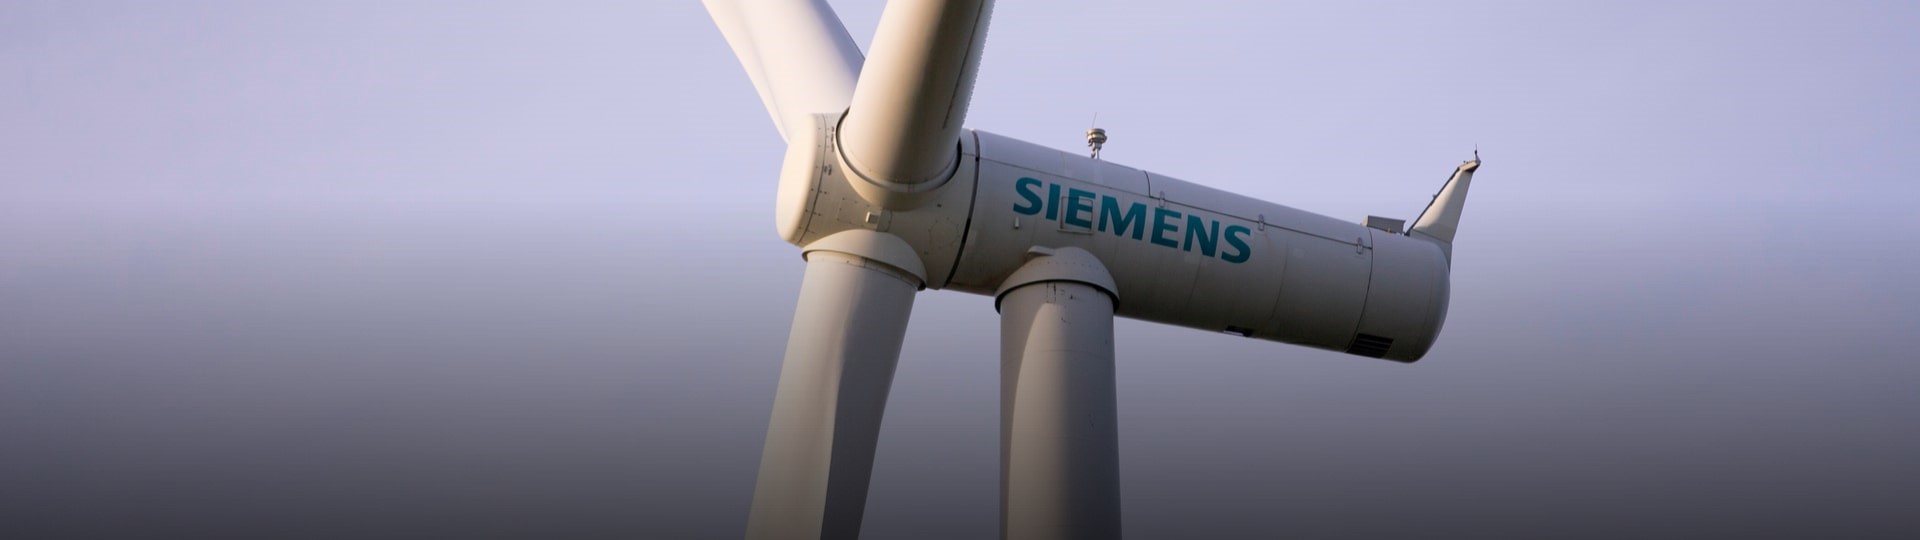 Místo výrobce krému Nivea v indexu DAX zaujme Siemens Energy